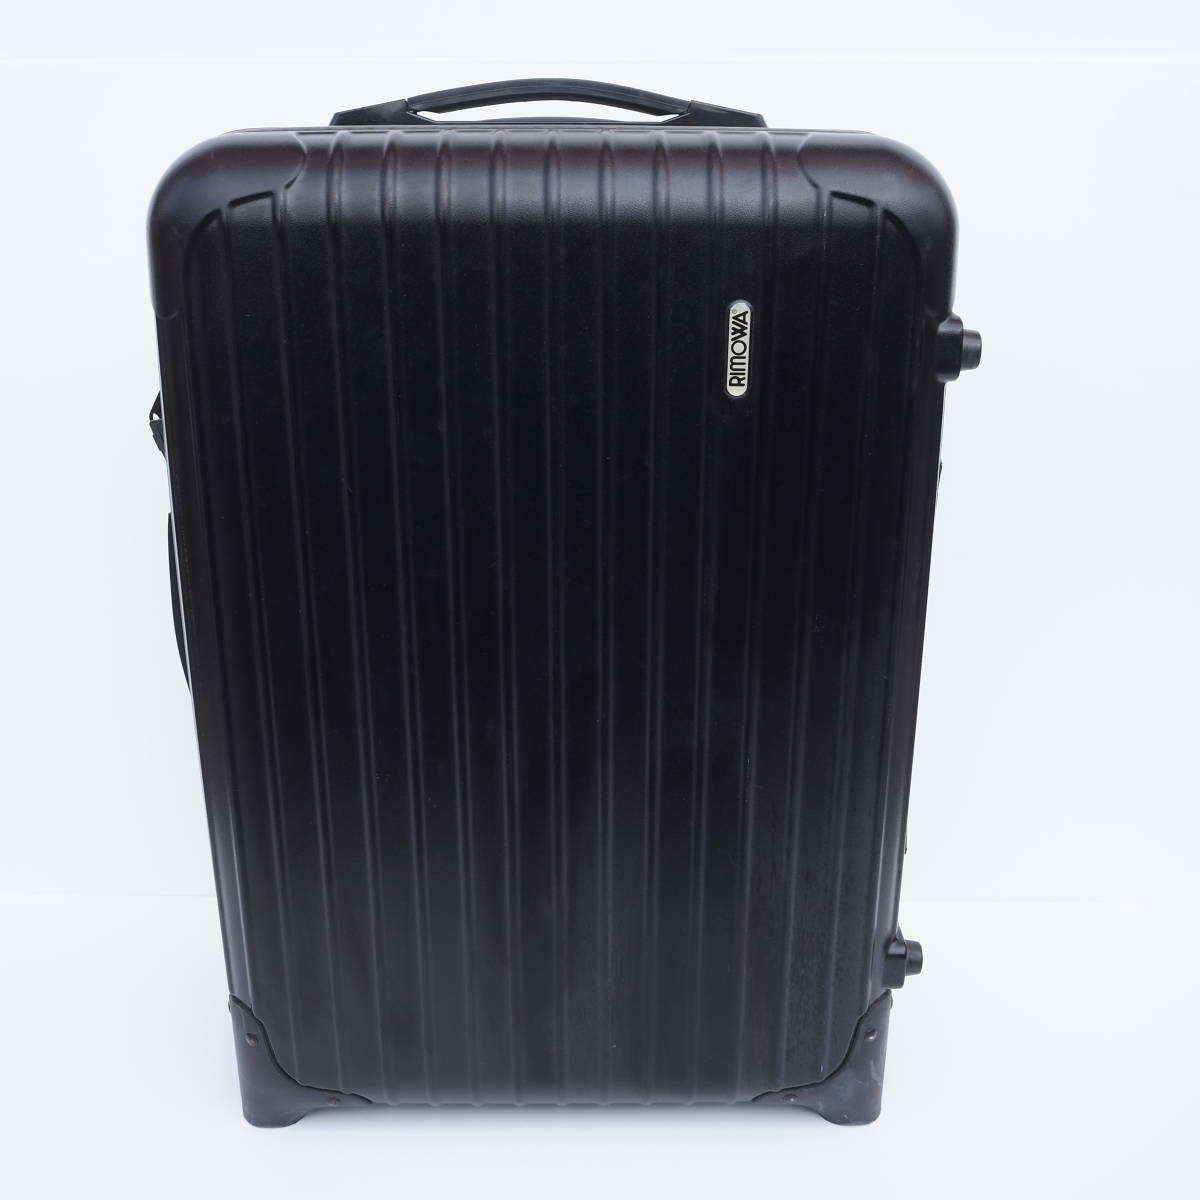 機内持ち込みサイズ リモワ RIMOWA リモワ SALSA 2輪 35L スーツケース キャリーケース ブラック 黒 851.52_画像1